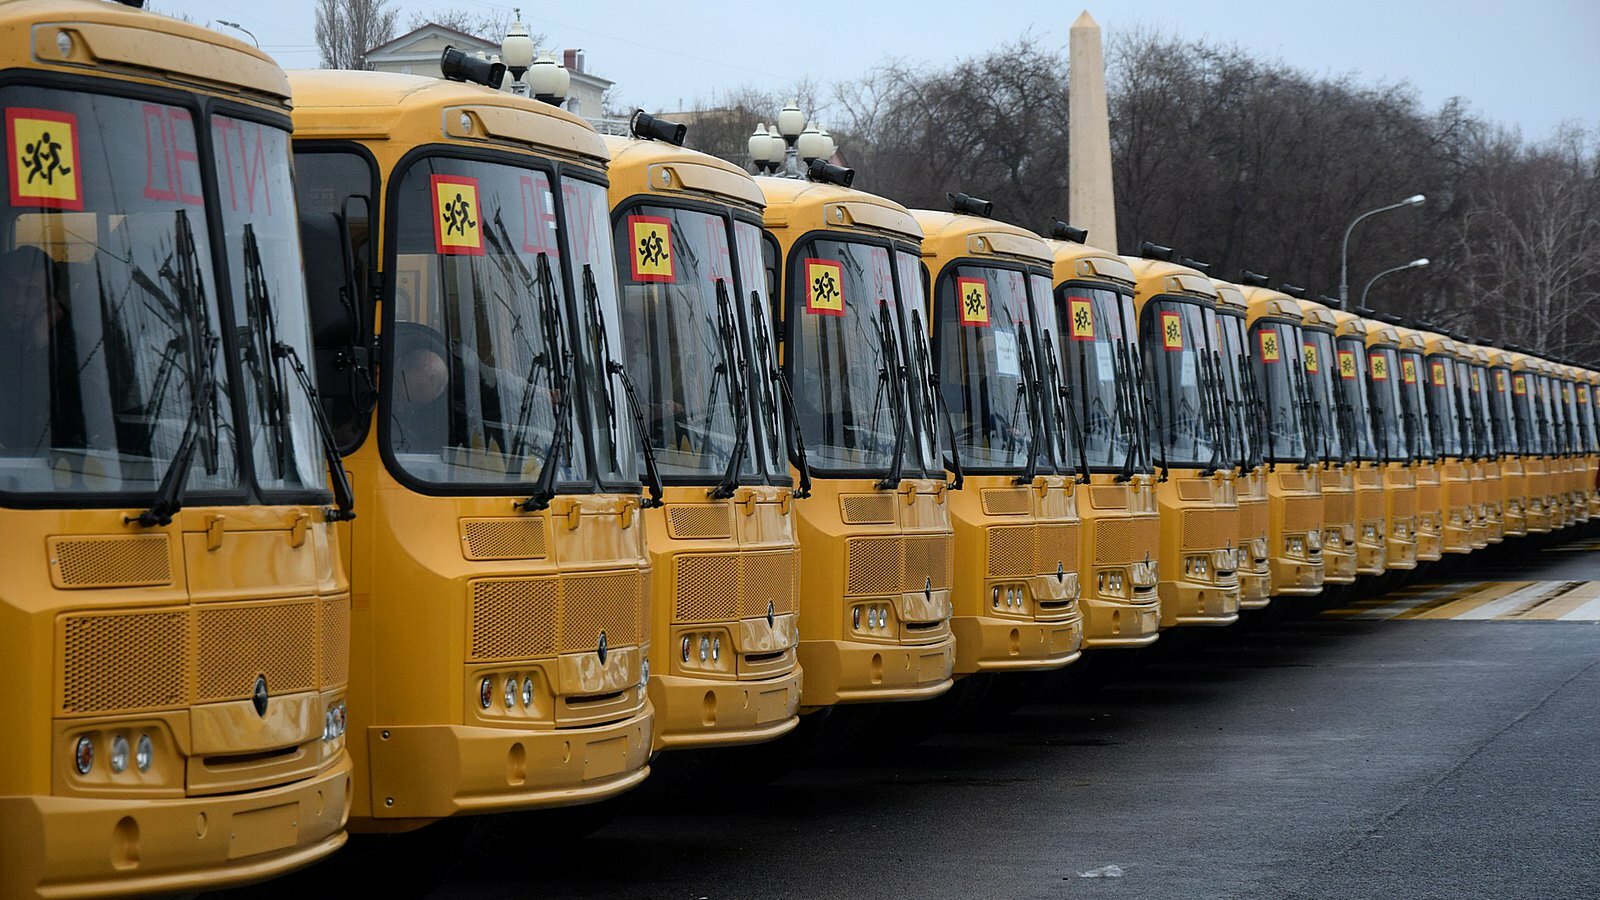 Тюменской области 4 школьных автобуса обойдутся в 6 млн рублей